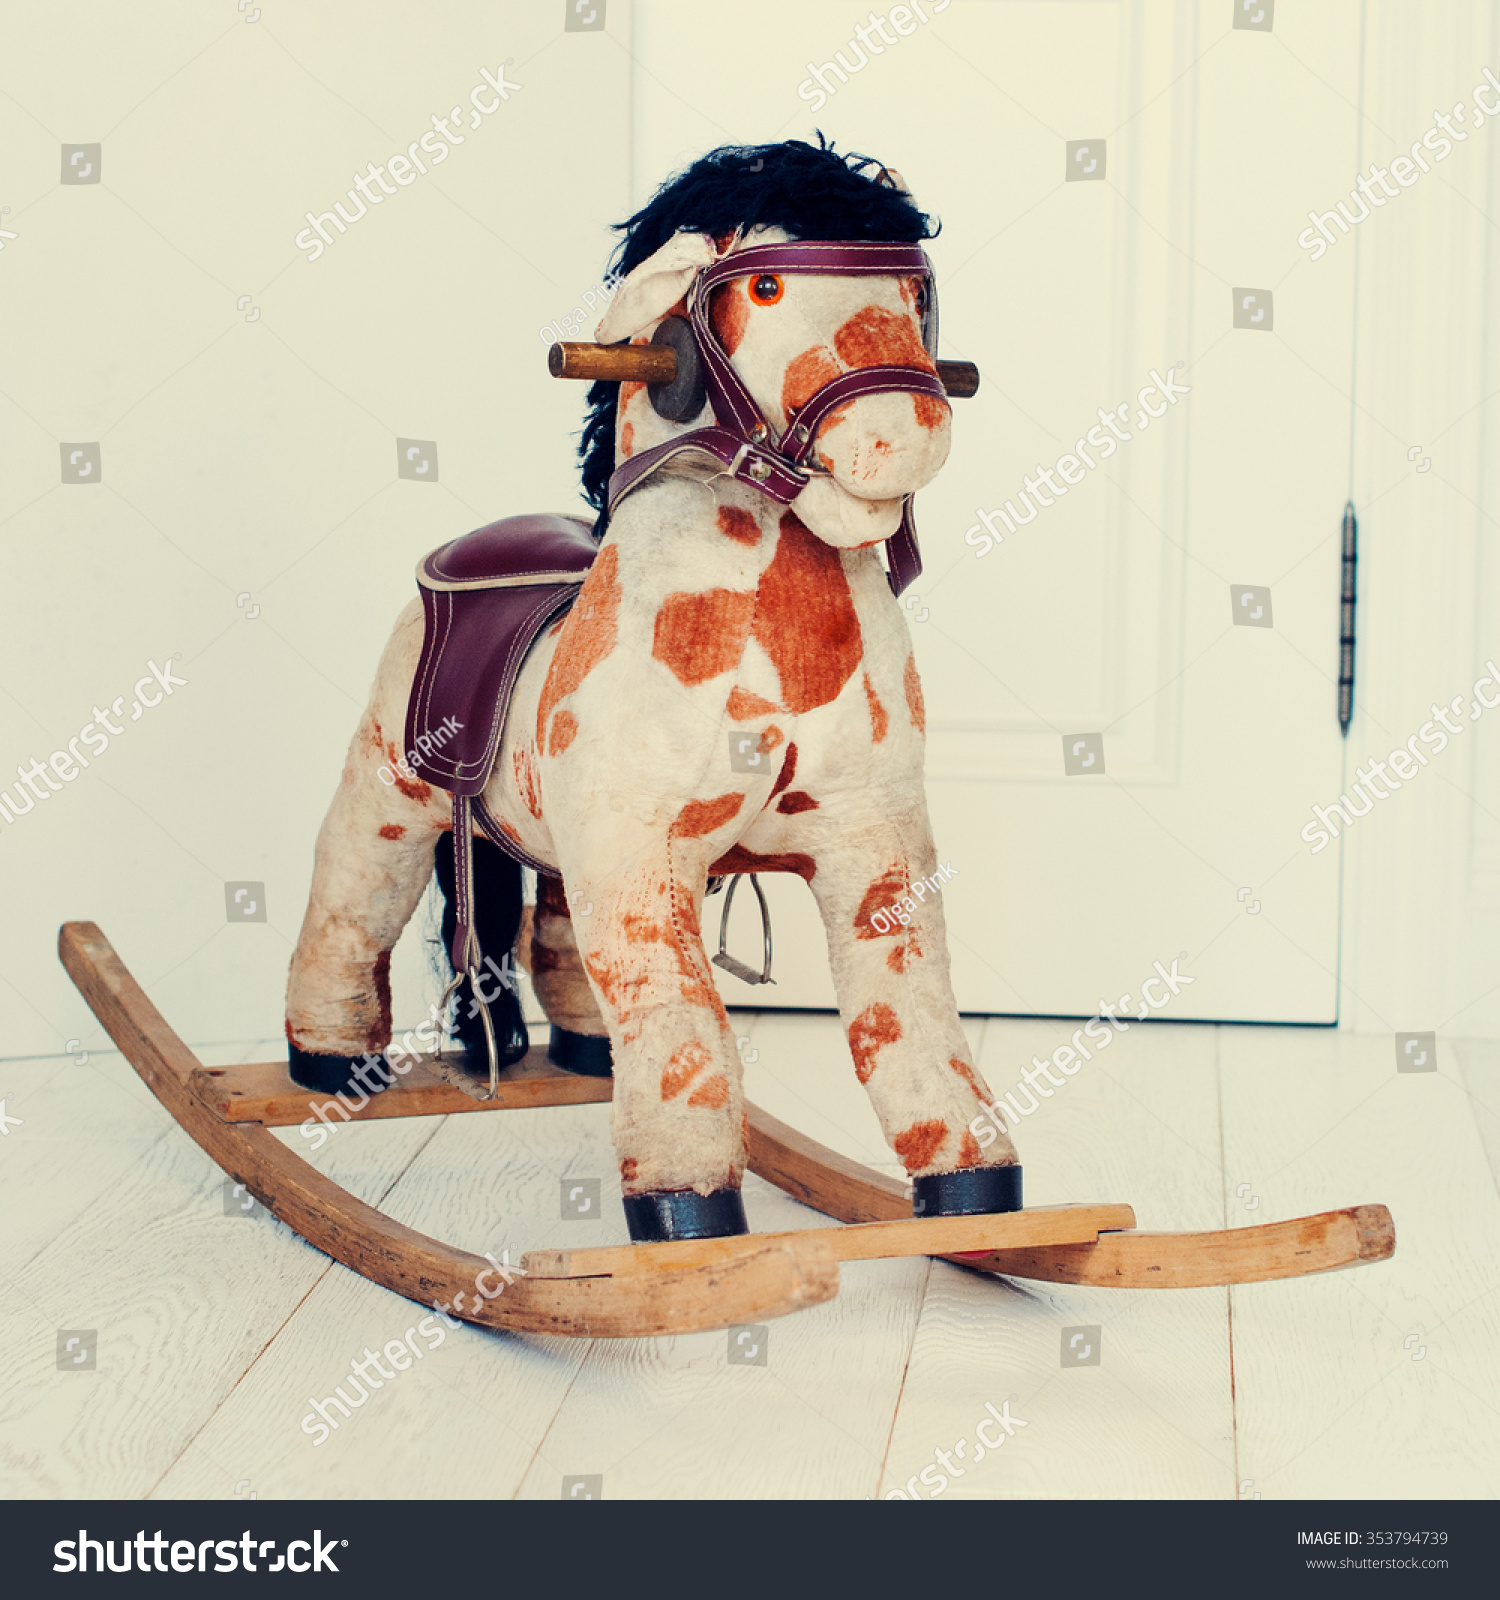 padded rocking horse